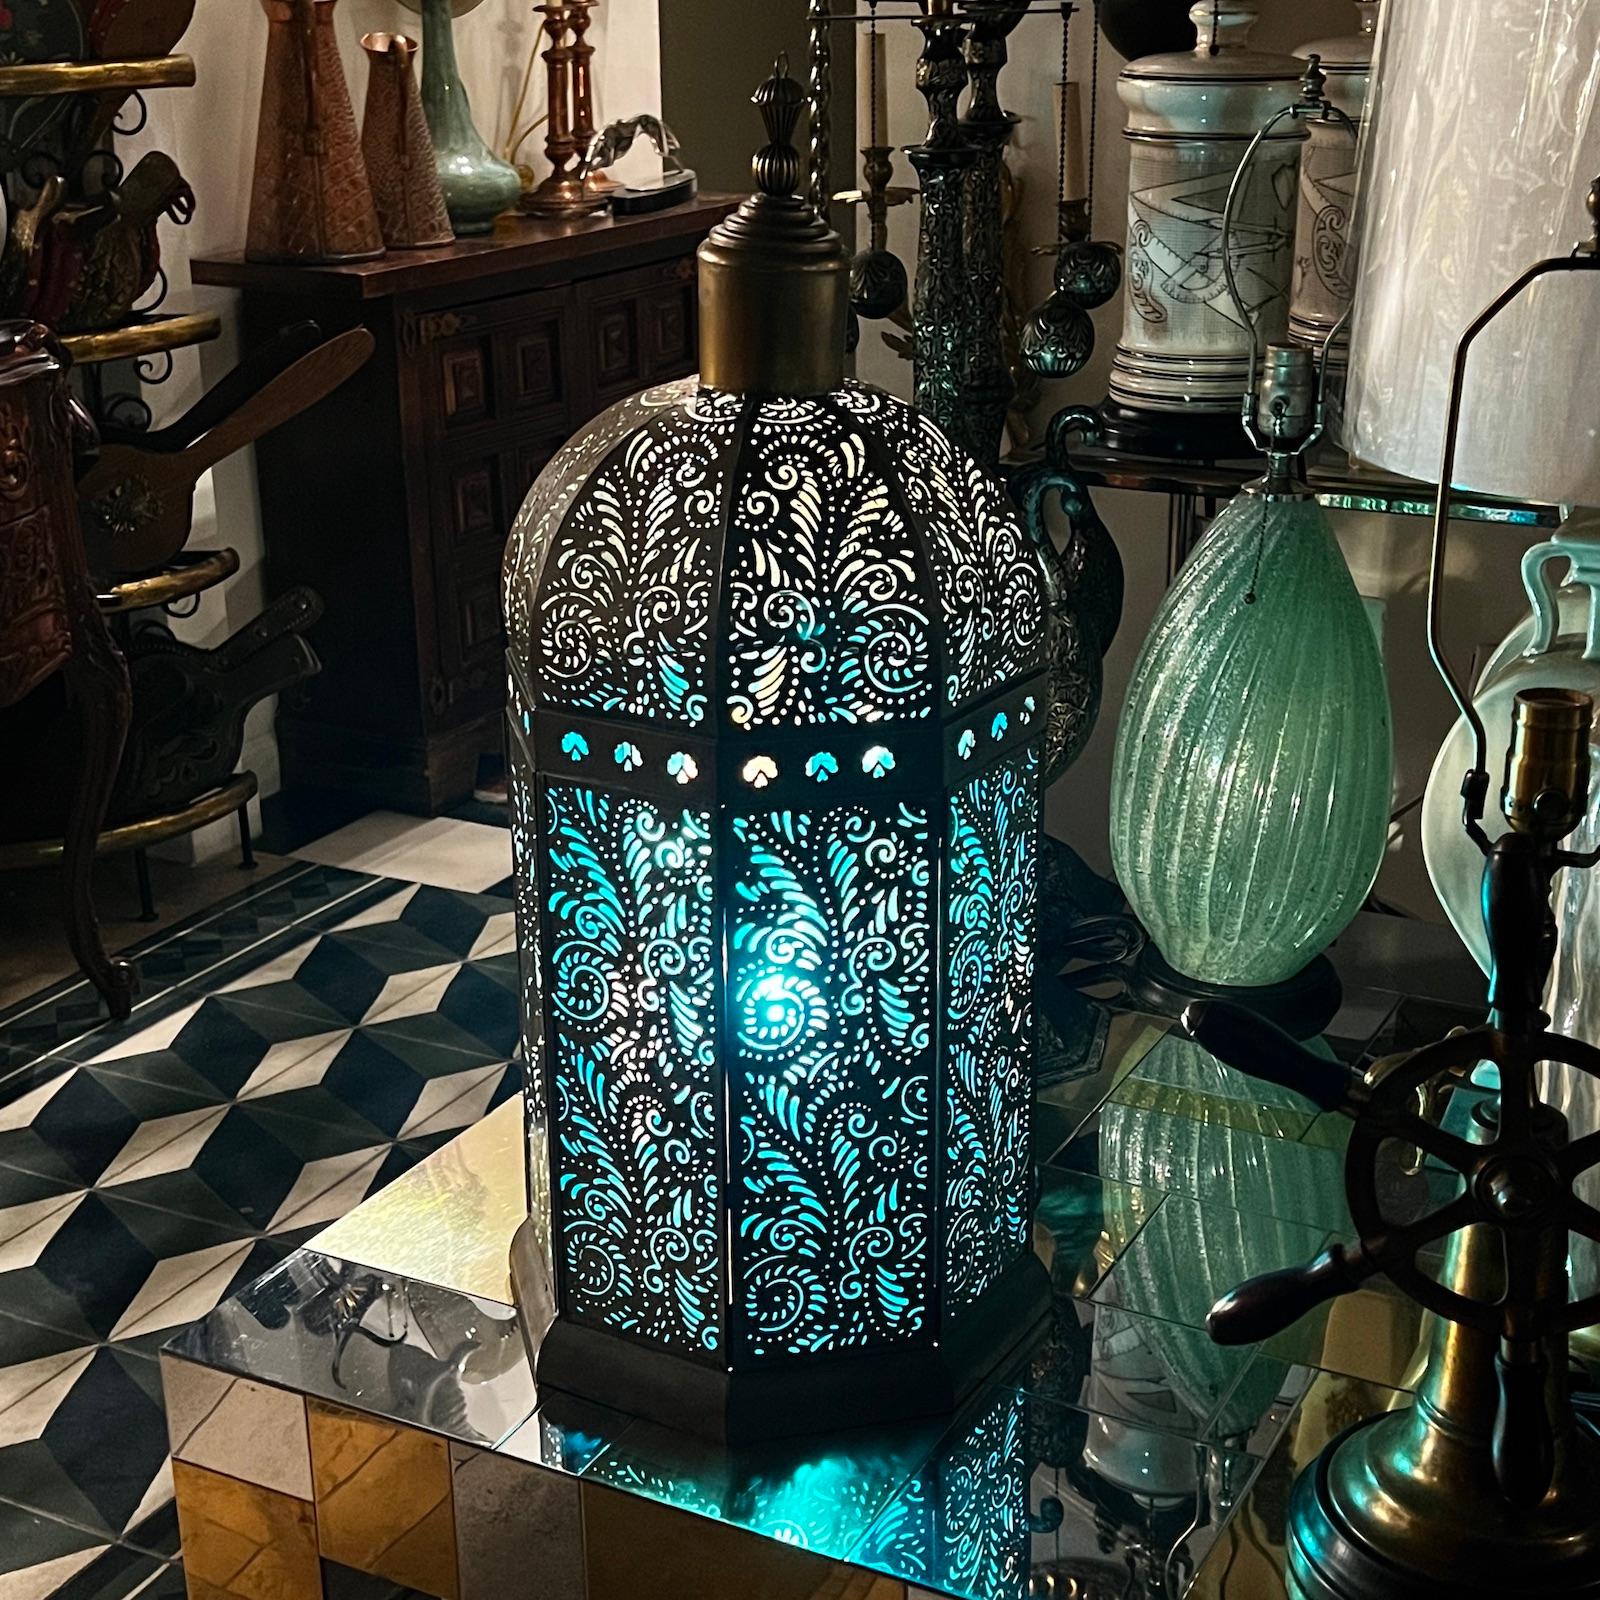 Lanterne turque en laiton percé, circa 2000, avec insertion de verre turquoise.

Mesures :
Hauteur : 28